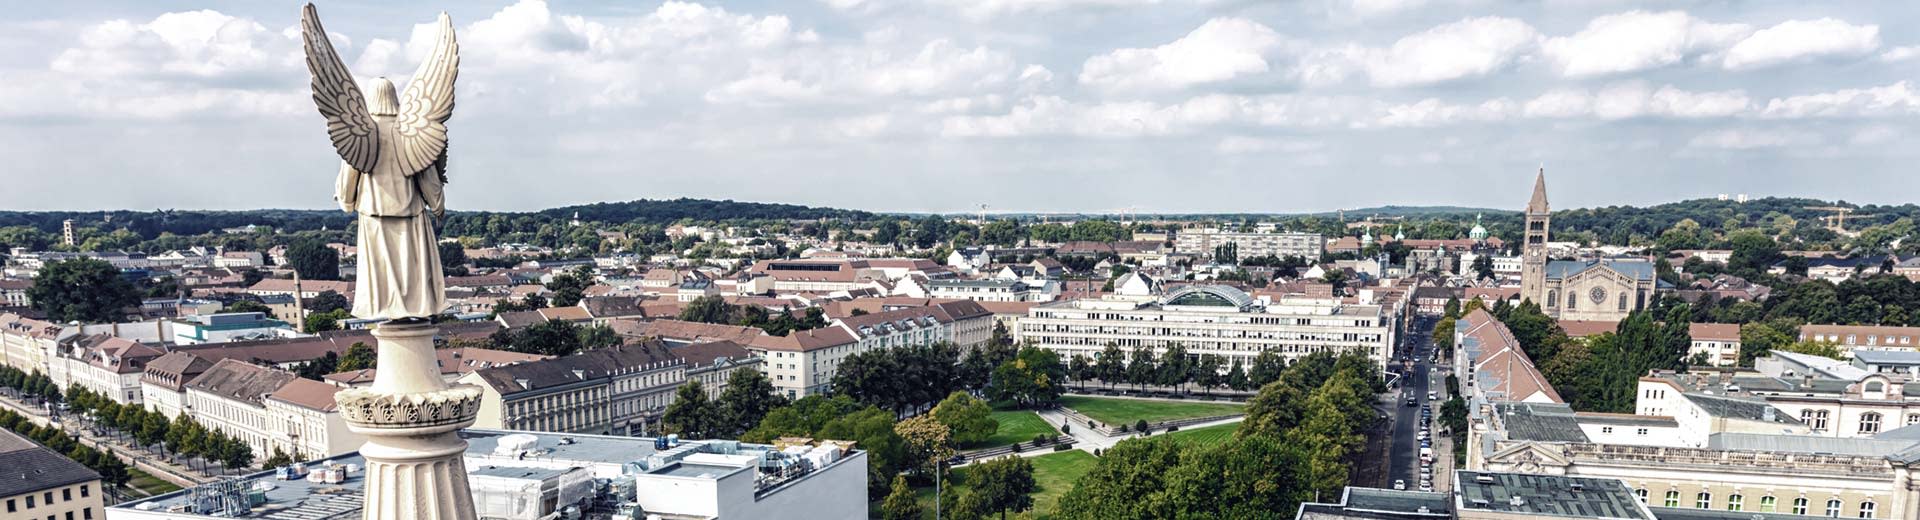 La hermosa ciudad de Potsdam de Alemania Oriental, con construcciones de baja altura y muchos parques verdes.